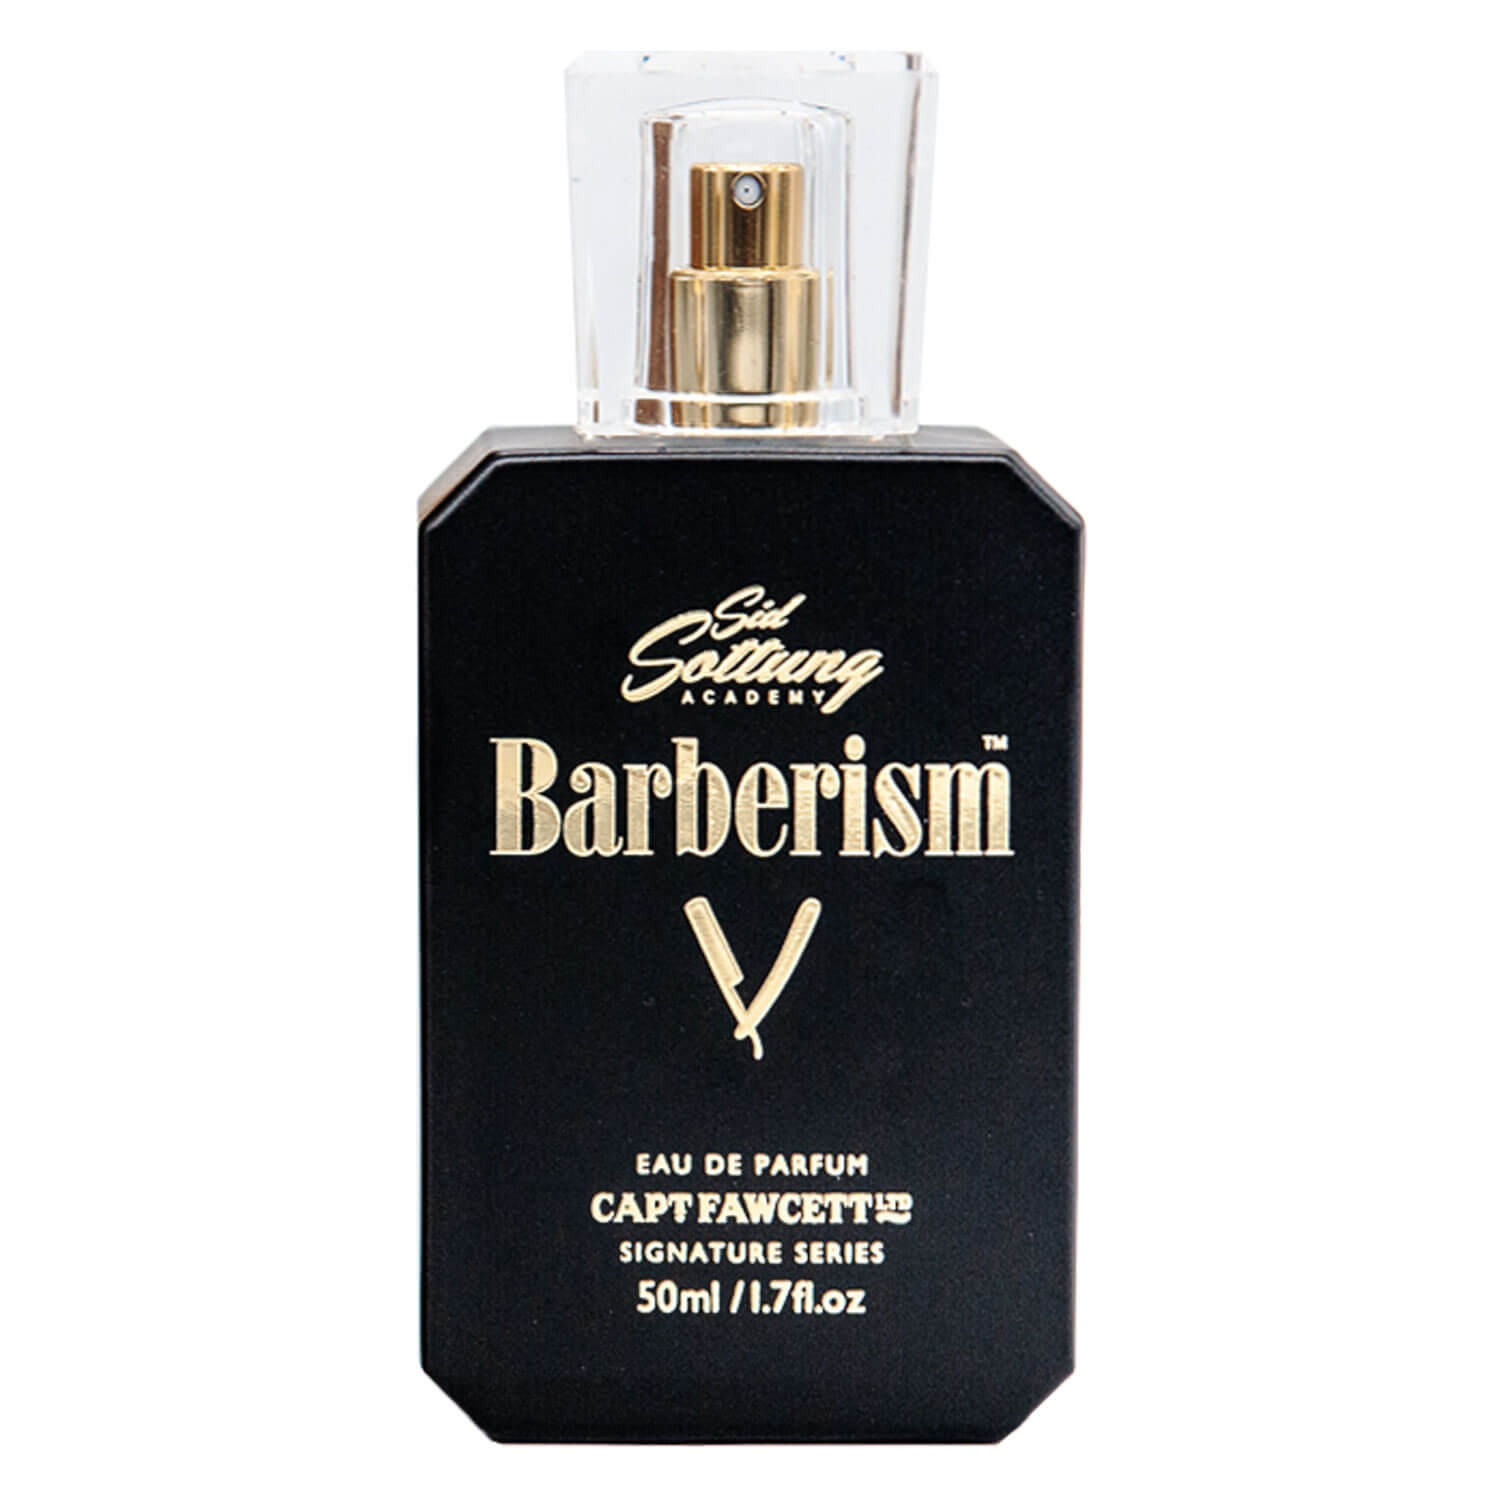 Produktbild von Capt. Fawcett Care - Sid Sottung's Barberism Eau de Parfum